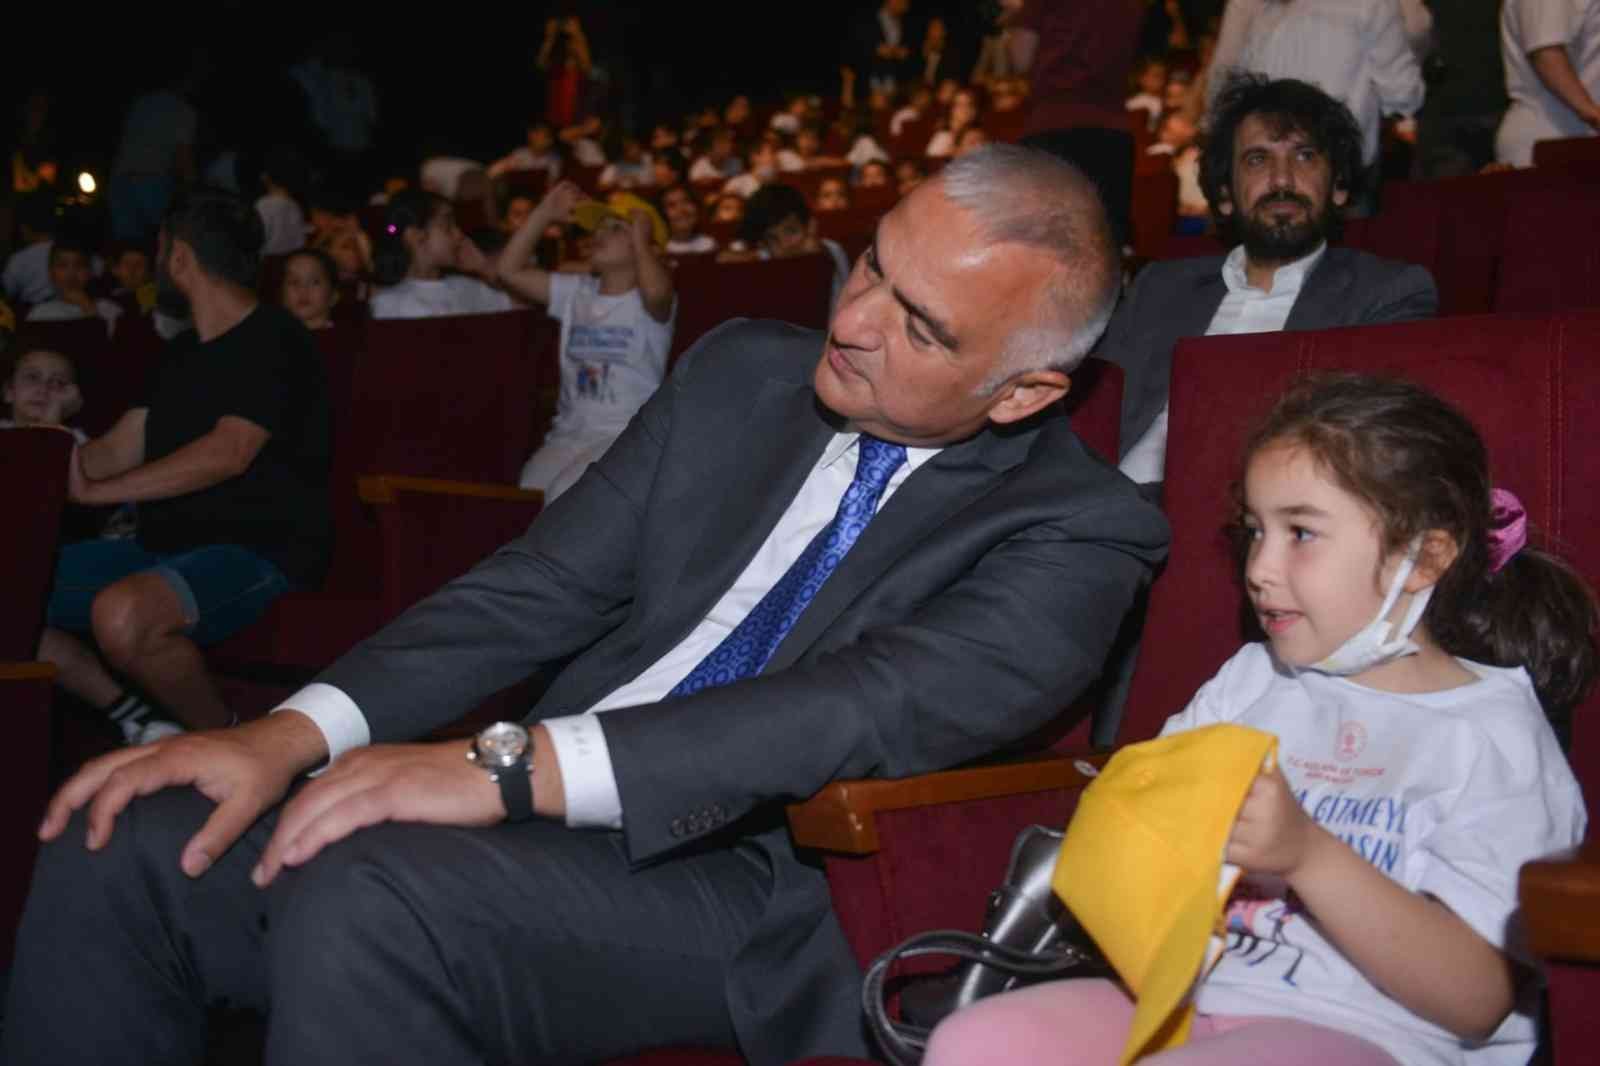 Kültür ve Turizm Bakanı Mehmet Nuri Ersoy, daha önce sinemaya gitmemiş çocuklarla birlikte film izledi. Bakan Ersoy, “Hedefimiz 1 milyon çocuğu ...